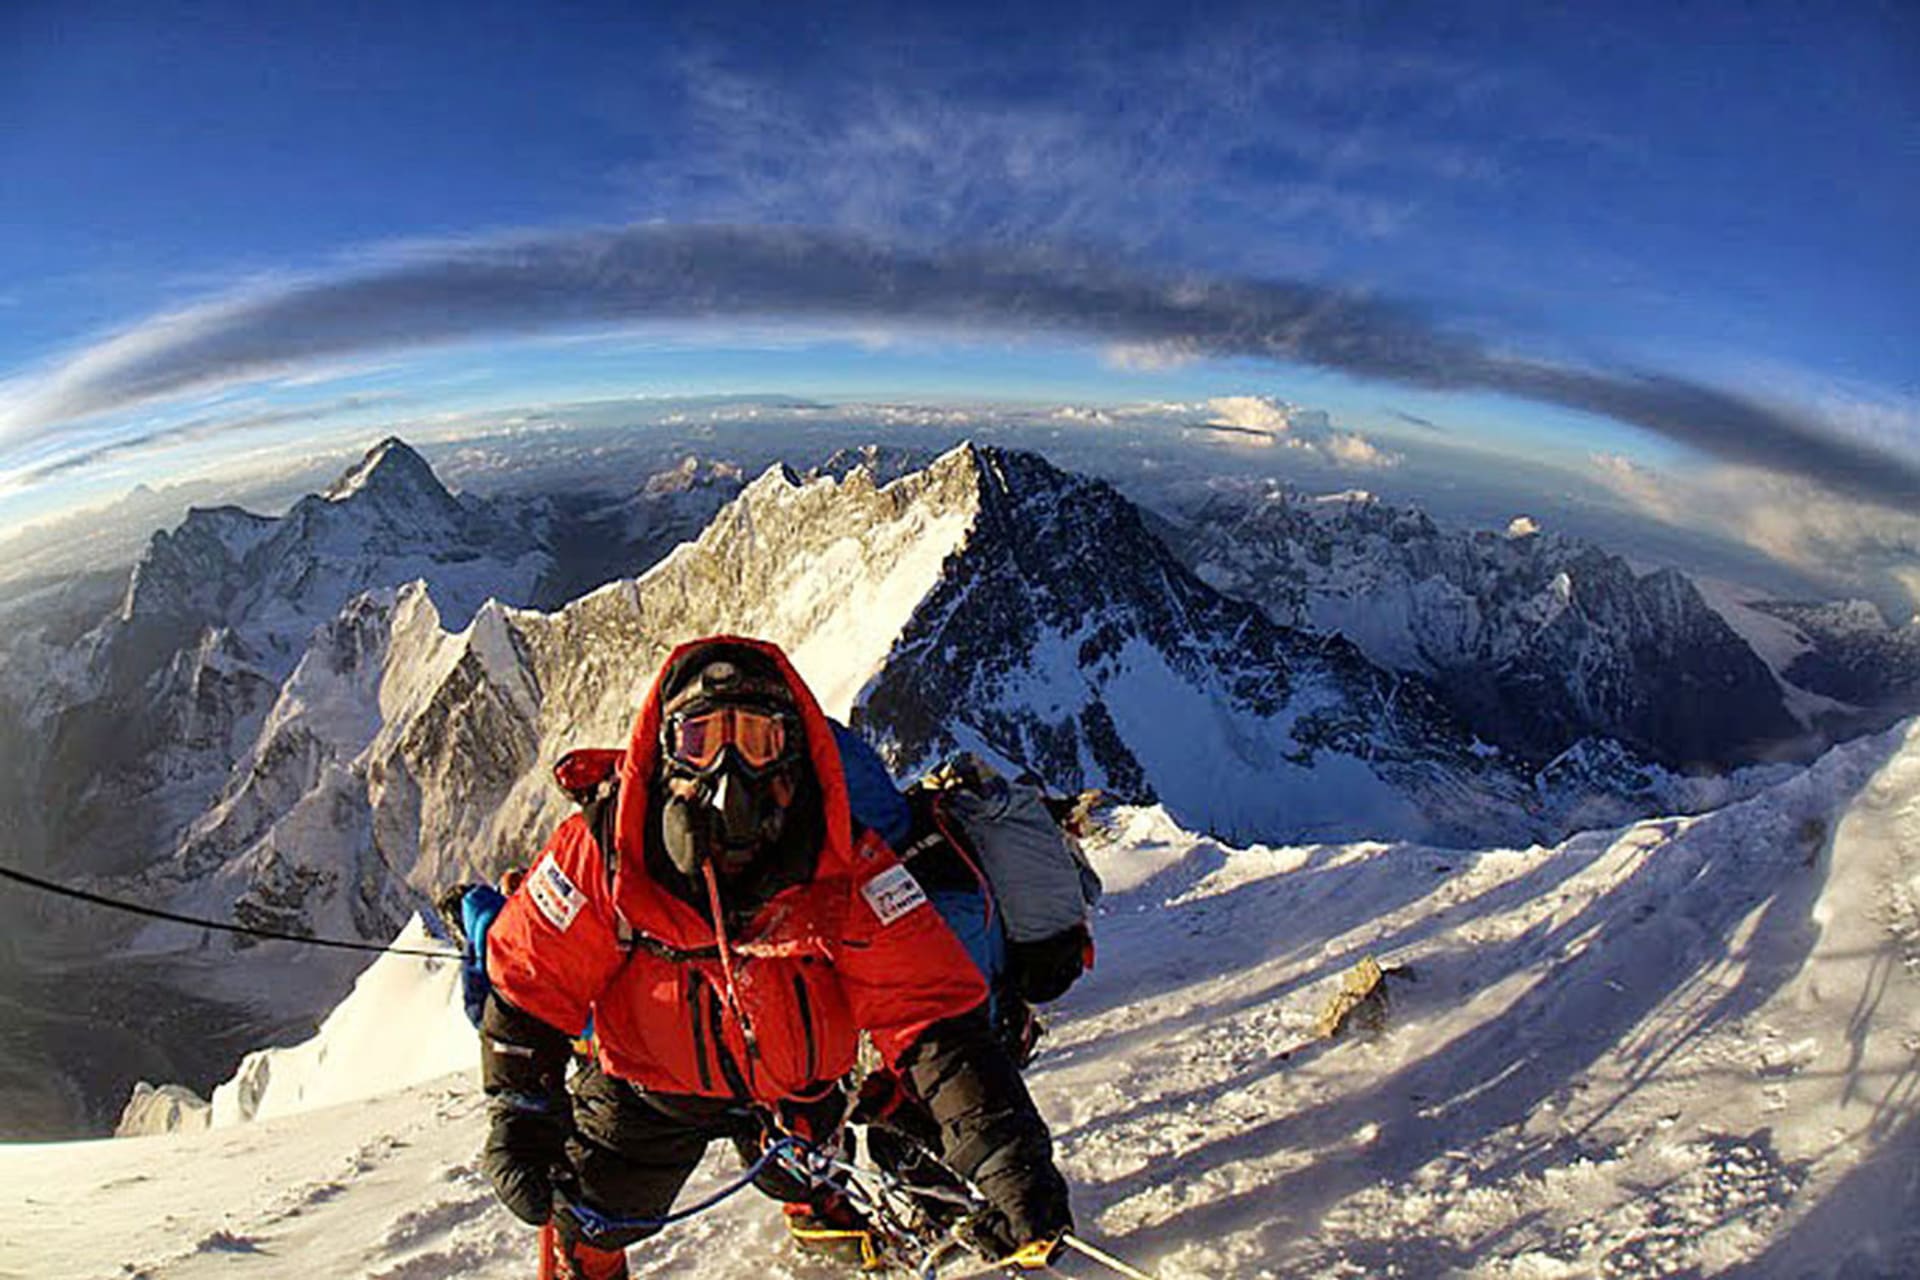 Radost z dobytí Everestu